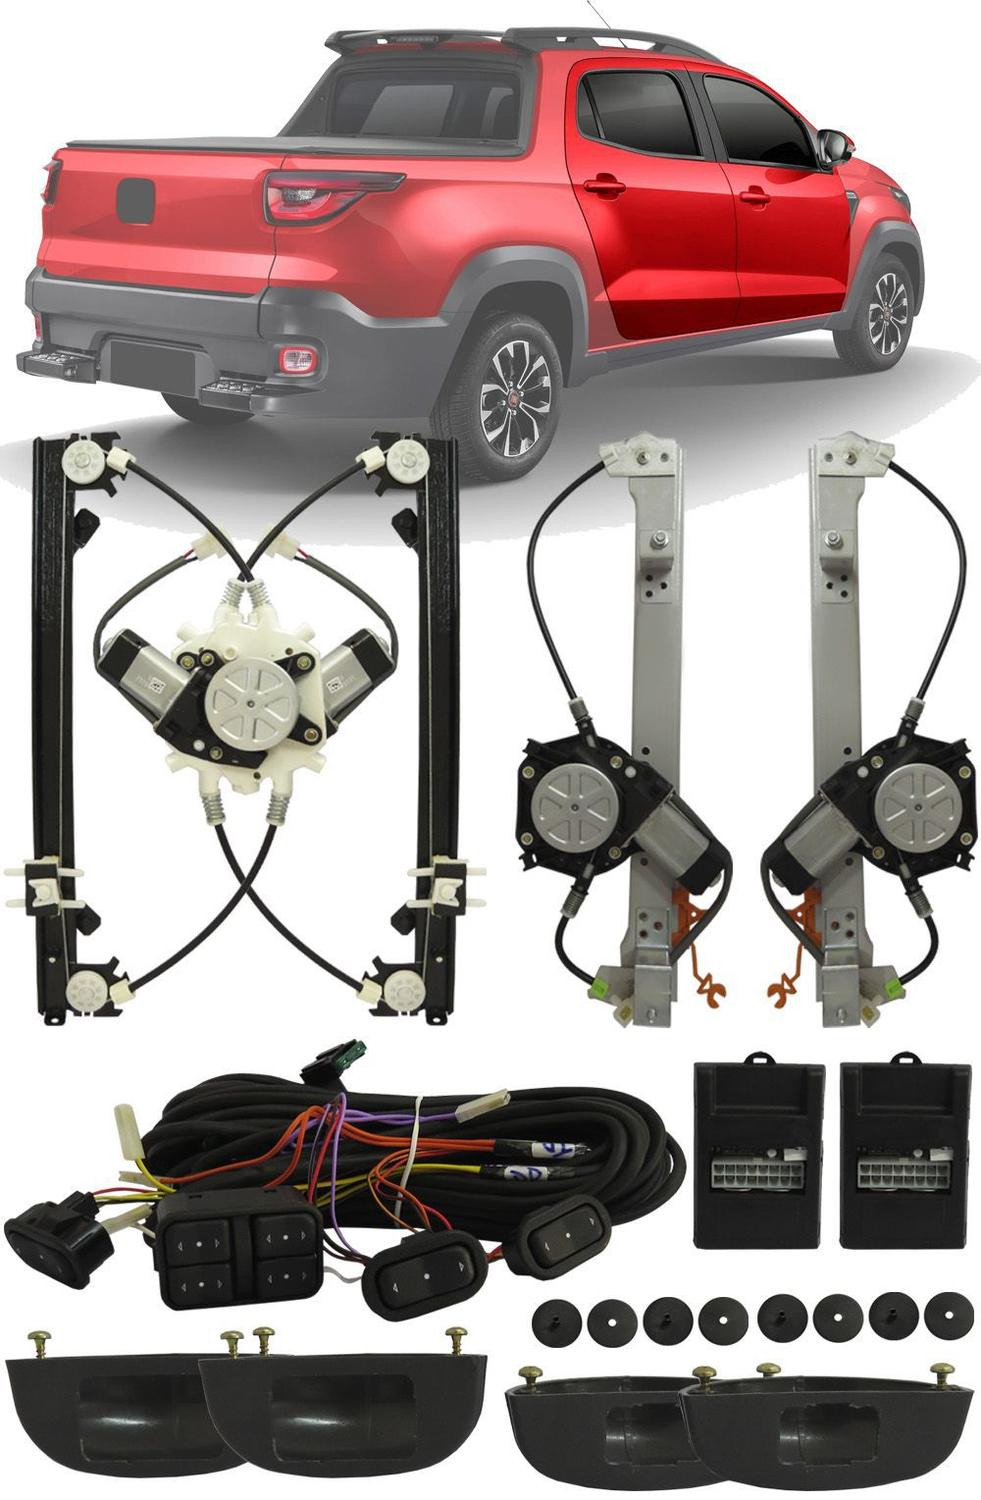 Vidro Elétrico dianteiro ou traseiro kit -  Volkswagen SpaceFox